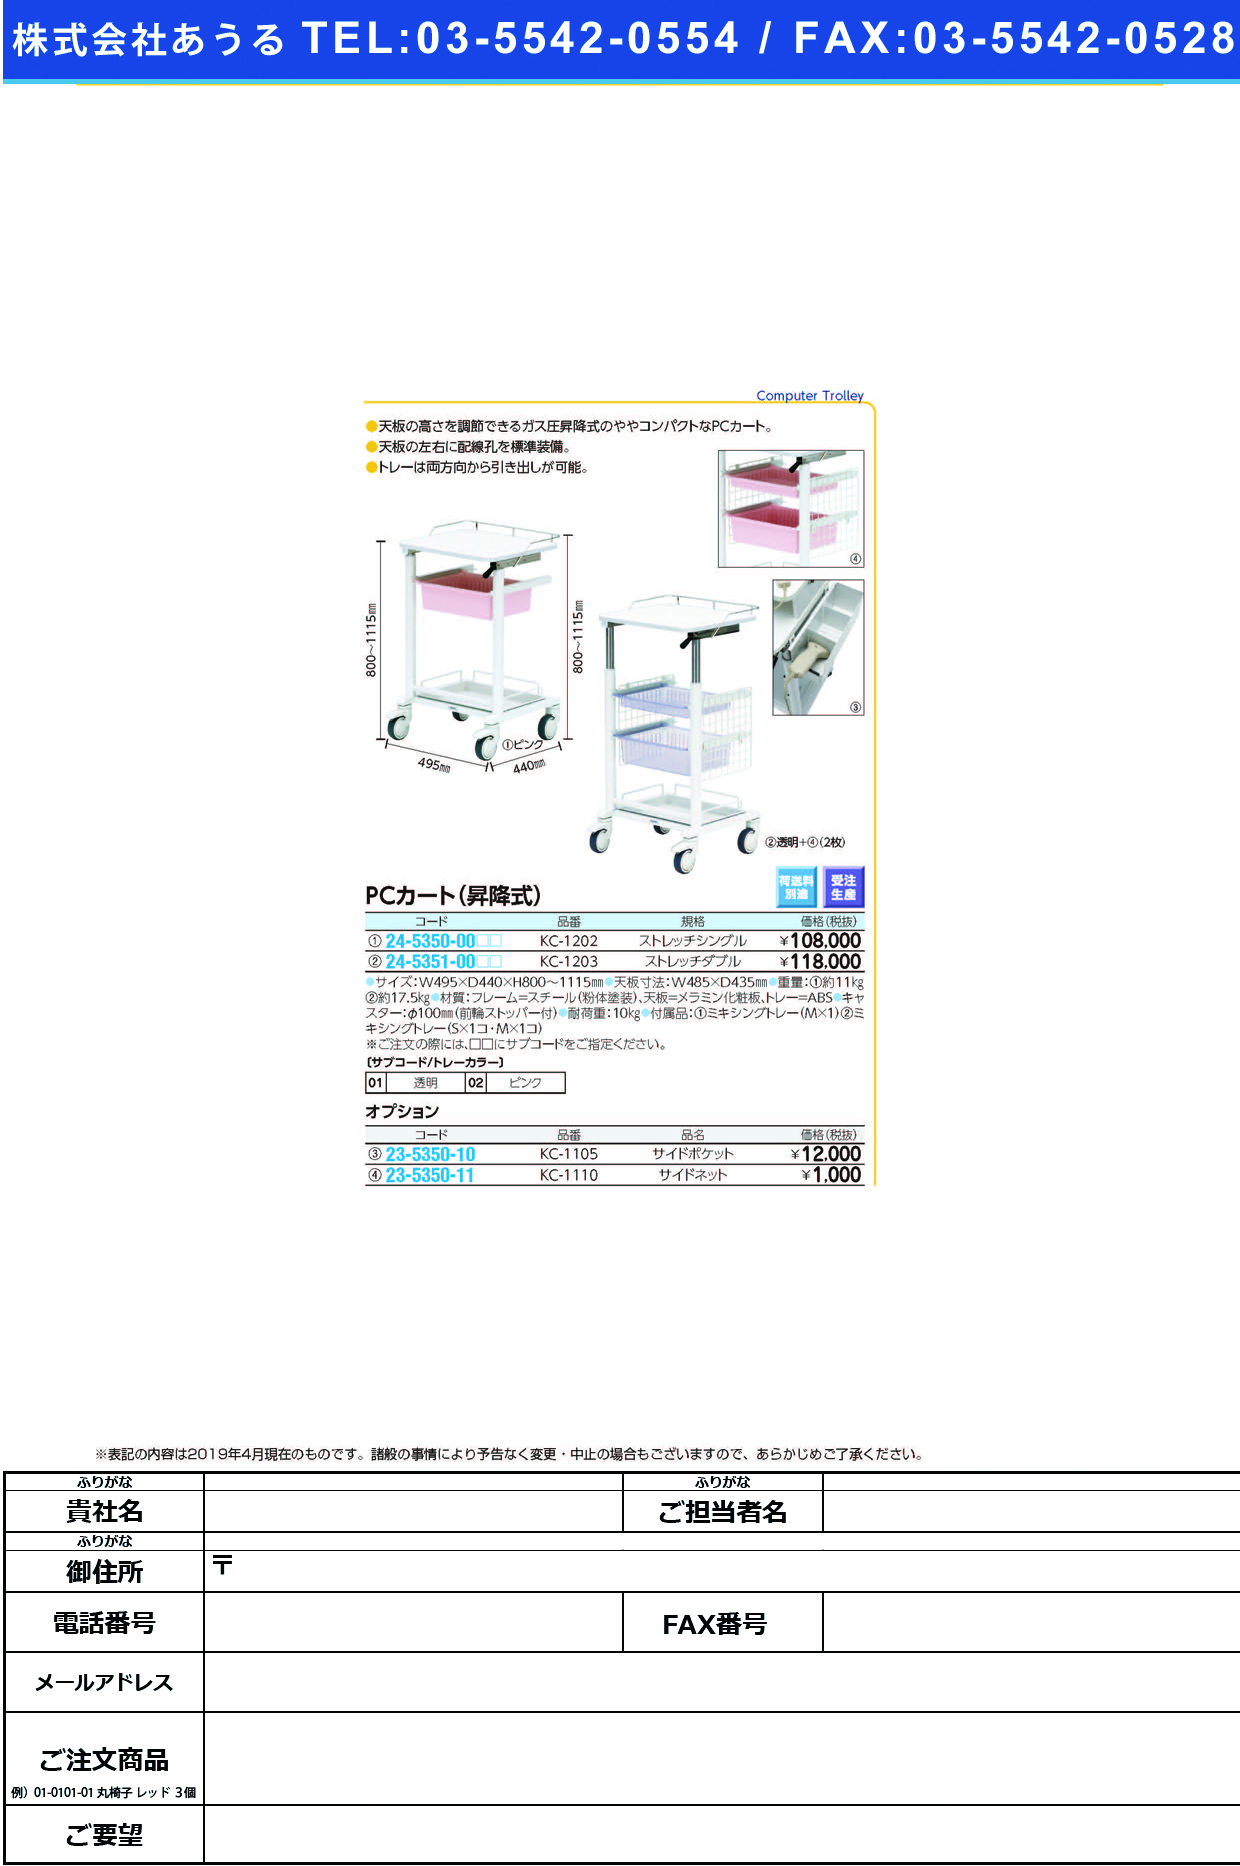 (24-5351-00)ＰＣカート（昇降式） KC-1203(ｽﾄﾚｯﾁﾀﾞﾌﾞﾙ) PCｶｰﾄ(ｼｮｳｺｳｼｷ) 透明(ケルン)【1台単位】【2019年カタログ商品】